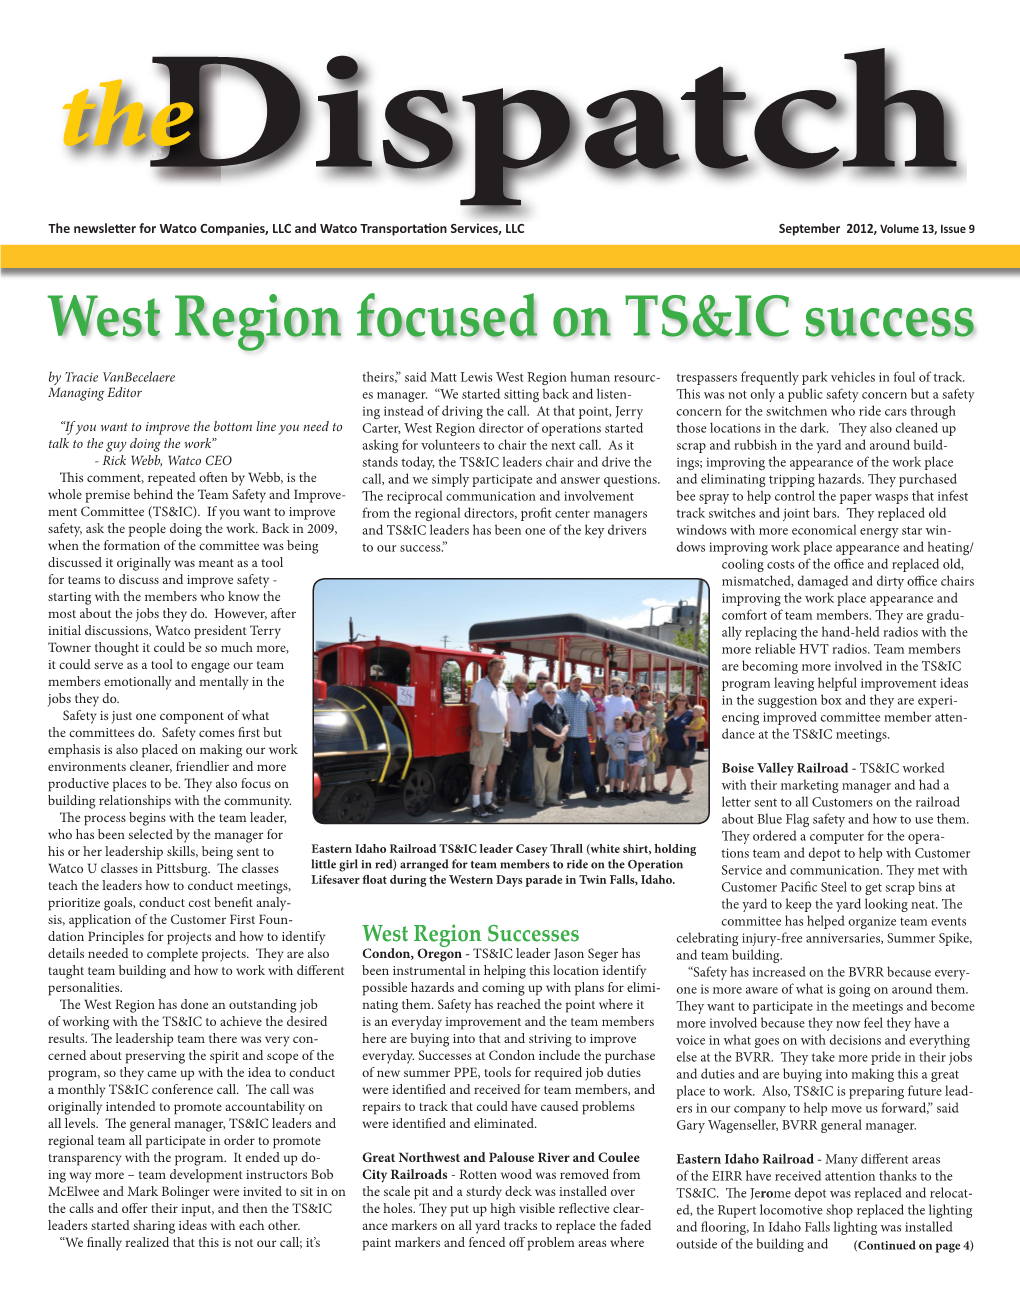 West Region Focused on TS&IC Success